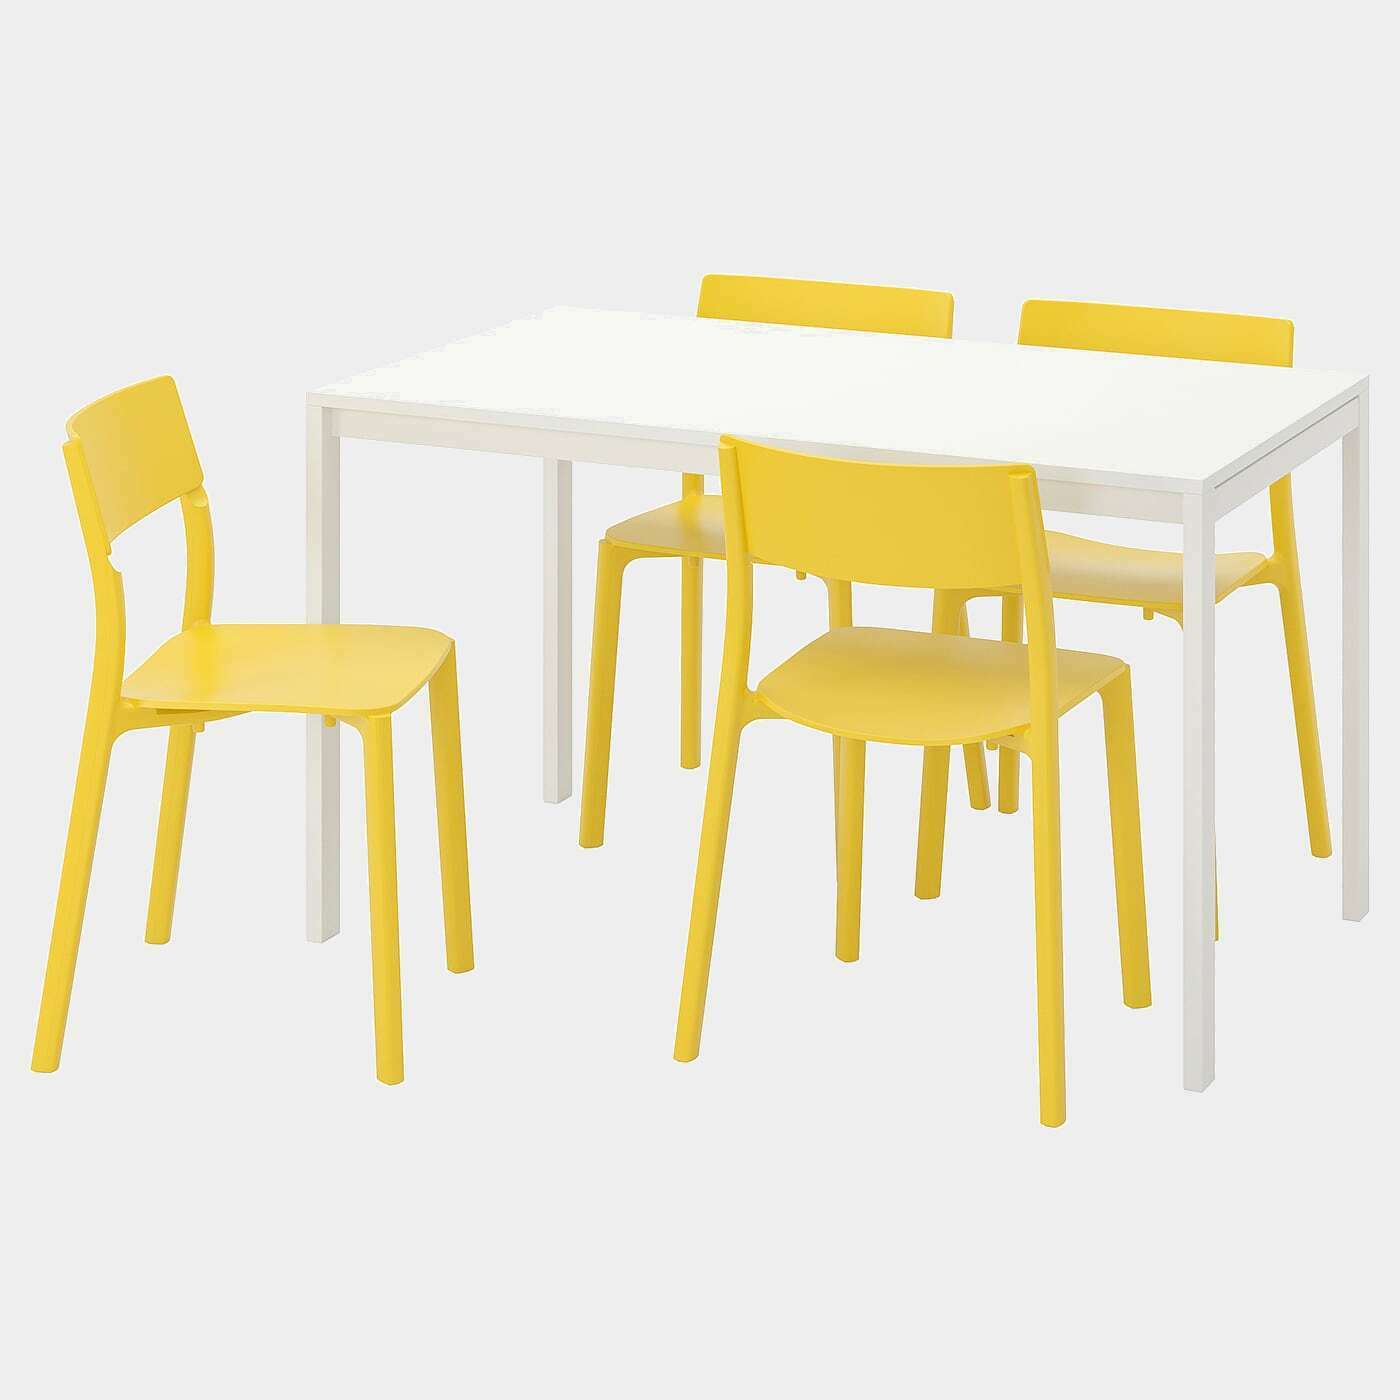 MELLTORP / JANINGE Tisch und 4 Stühle  - Essplatzgruppe - Möbel Ideen für dein Zuhause von Home Trends. Möbel Trends von Social Media Influencer für dein Skandi Zuhause.